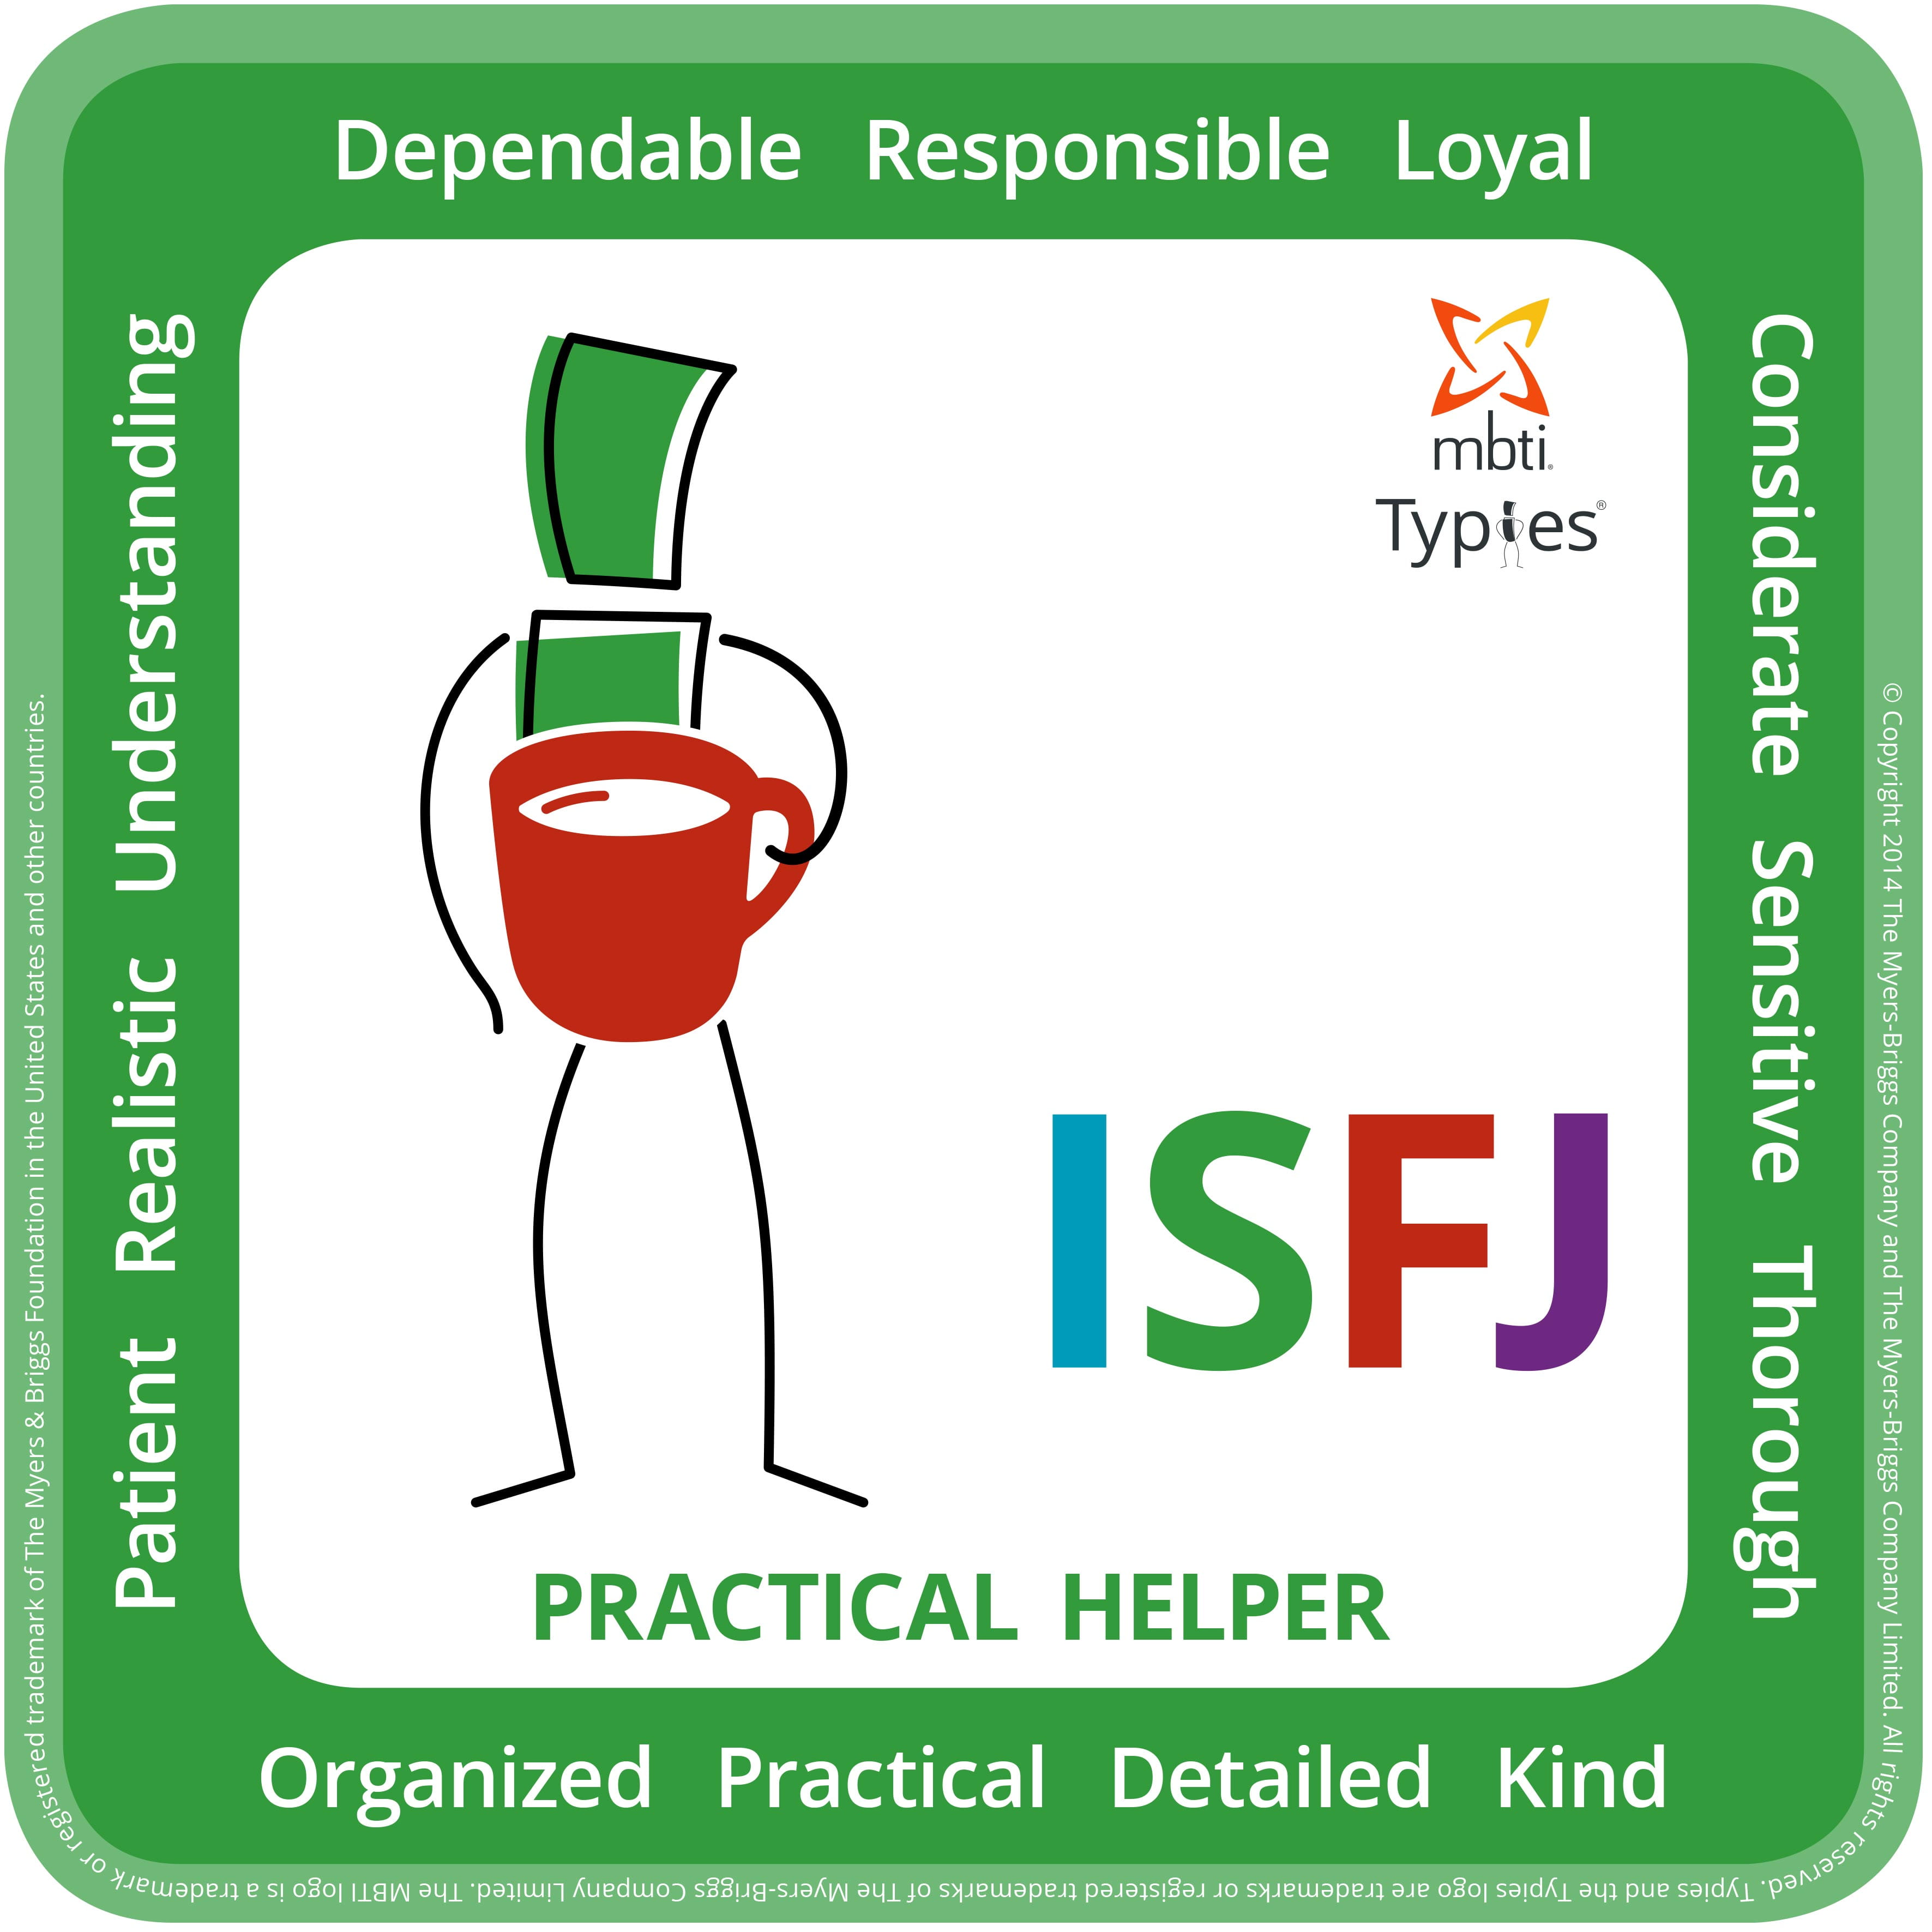 Arnheid MBTI Personality Type: ISFJ or ISFP?